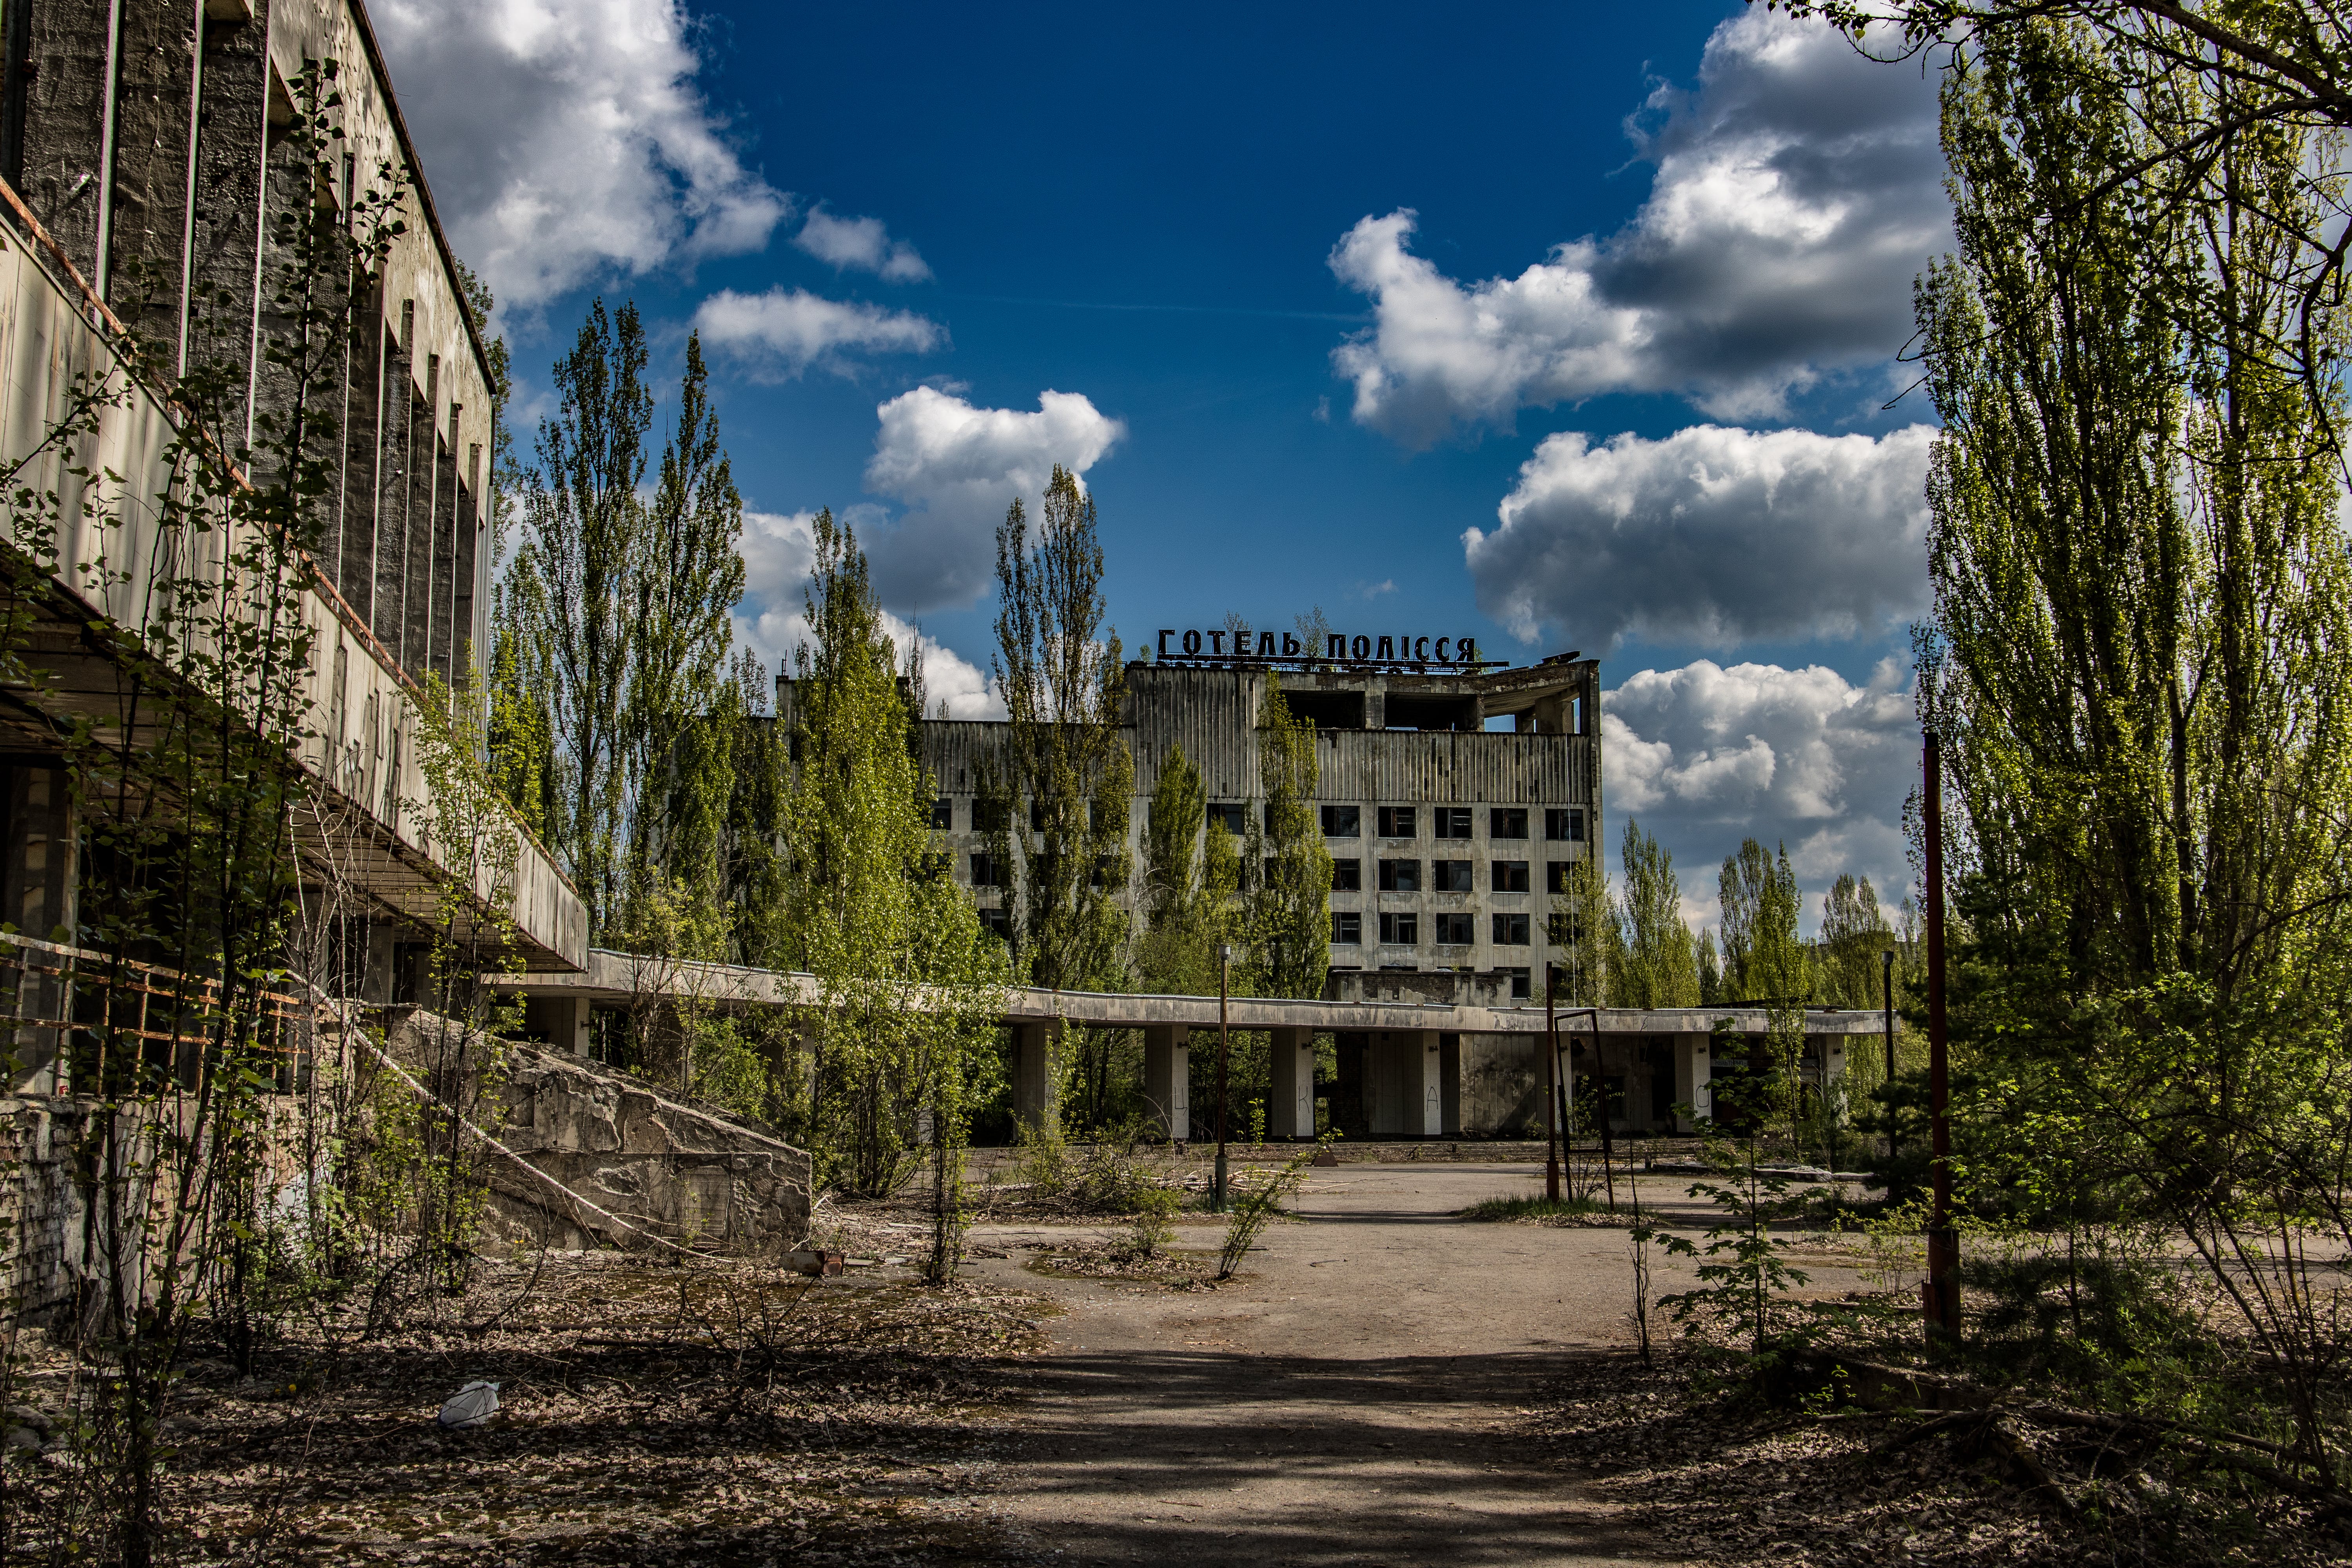 Gratis Fotos de stock gratuitas de Chernobyl, Edificio abandonado, exterior del edificio Foto de stock